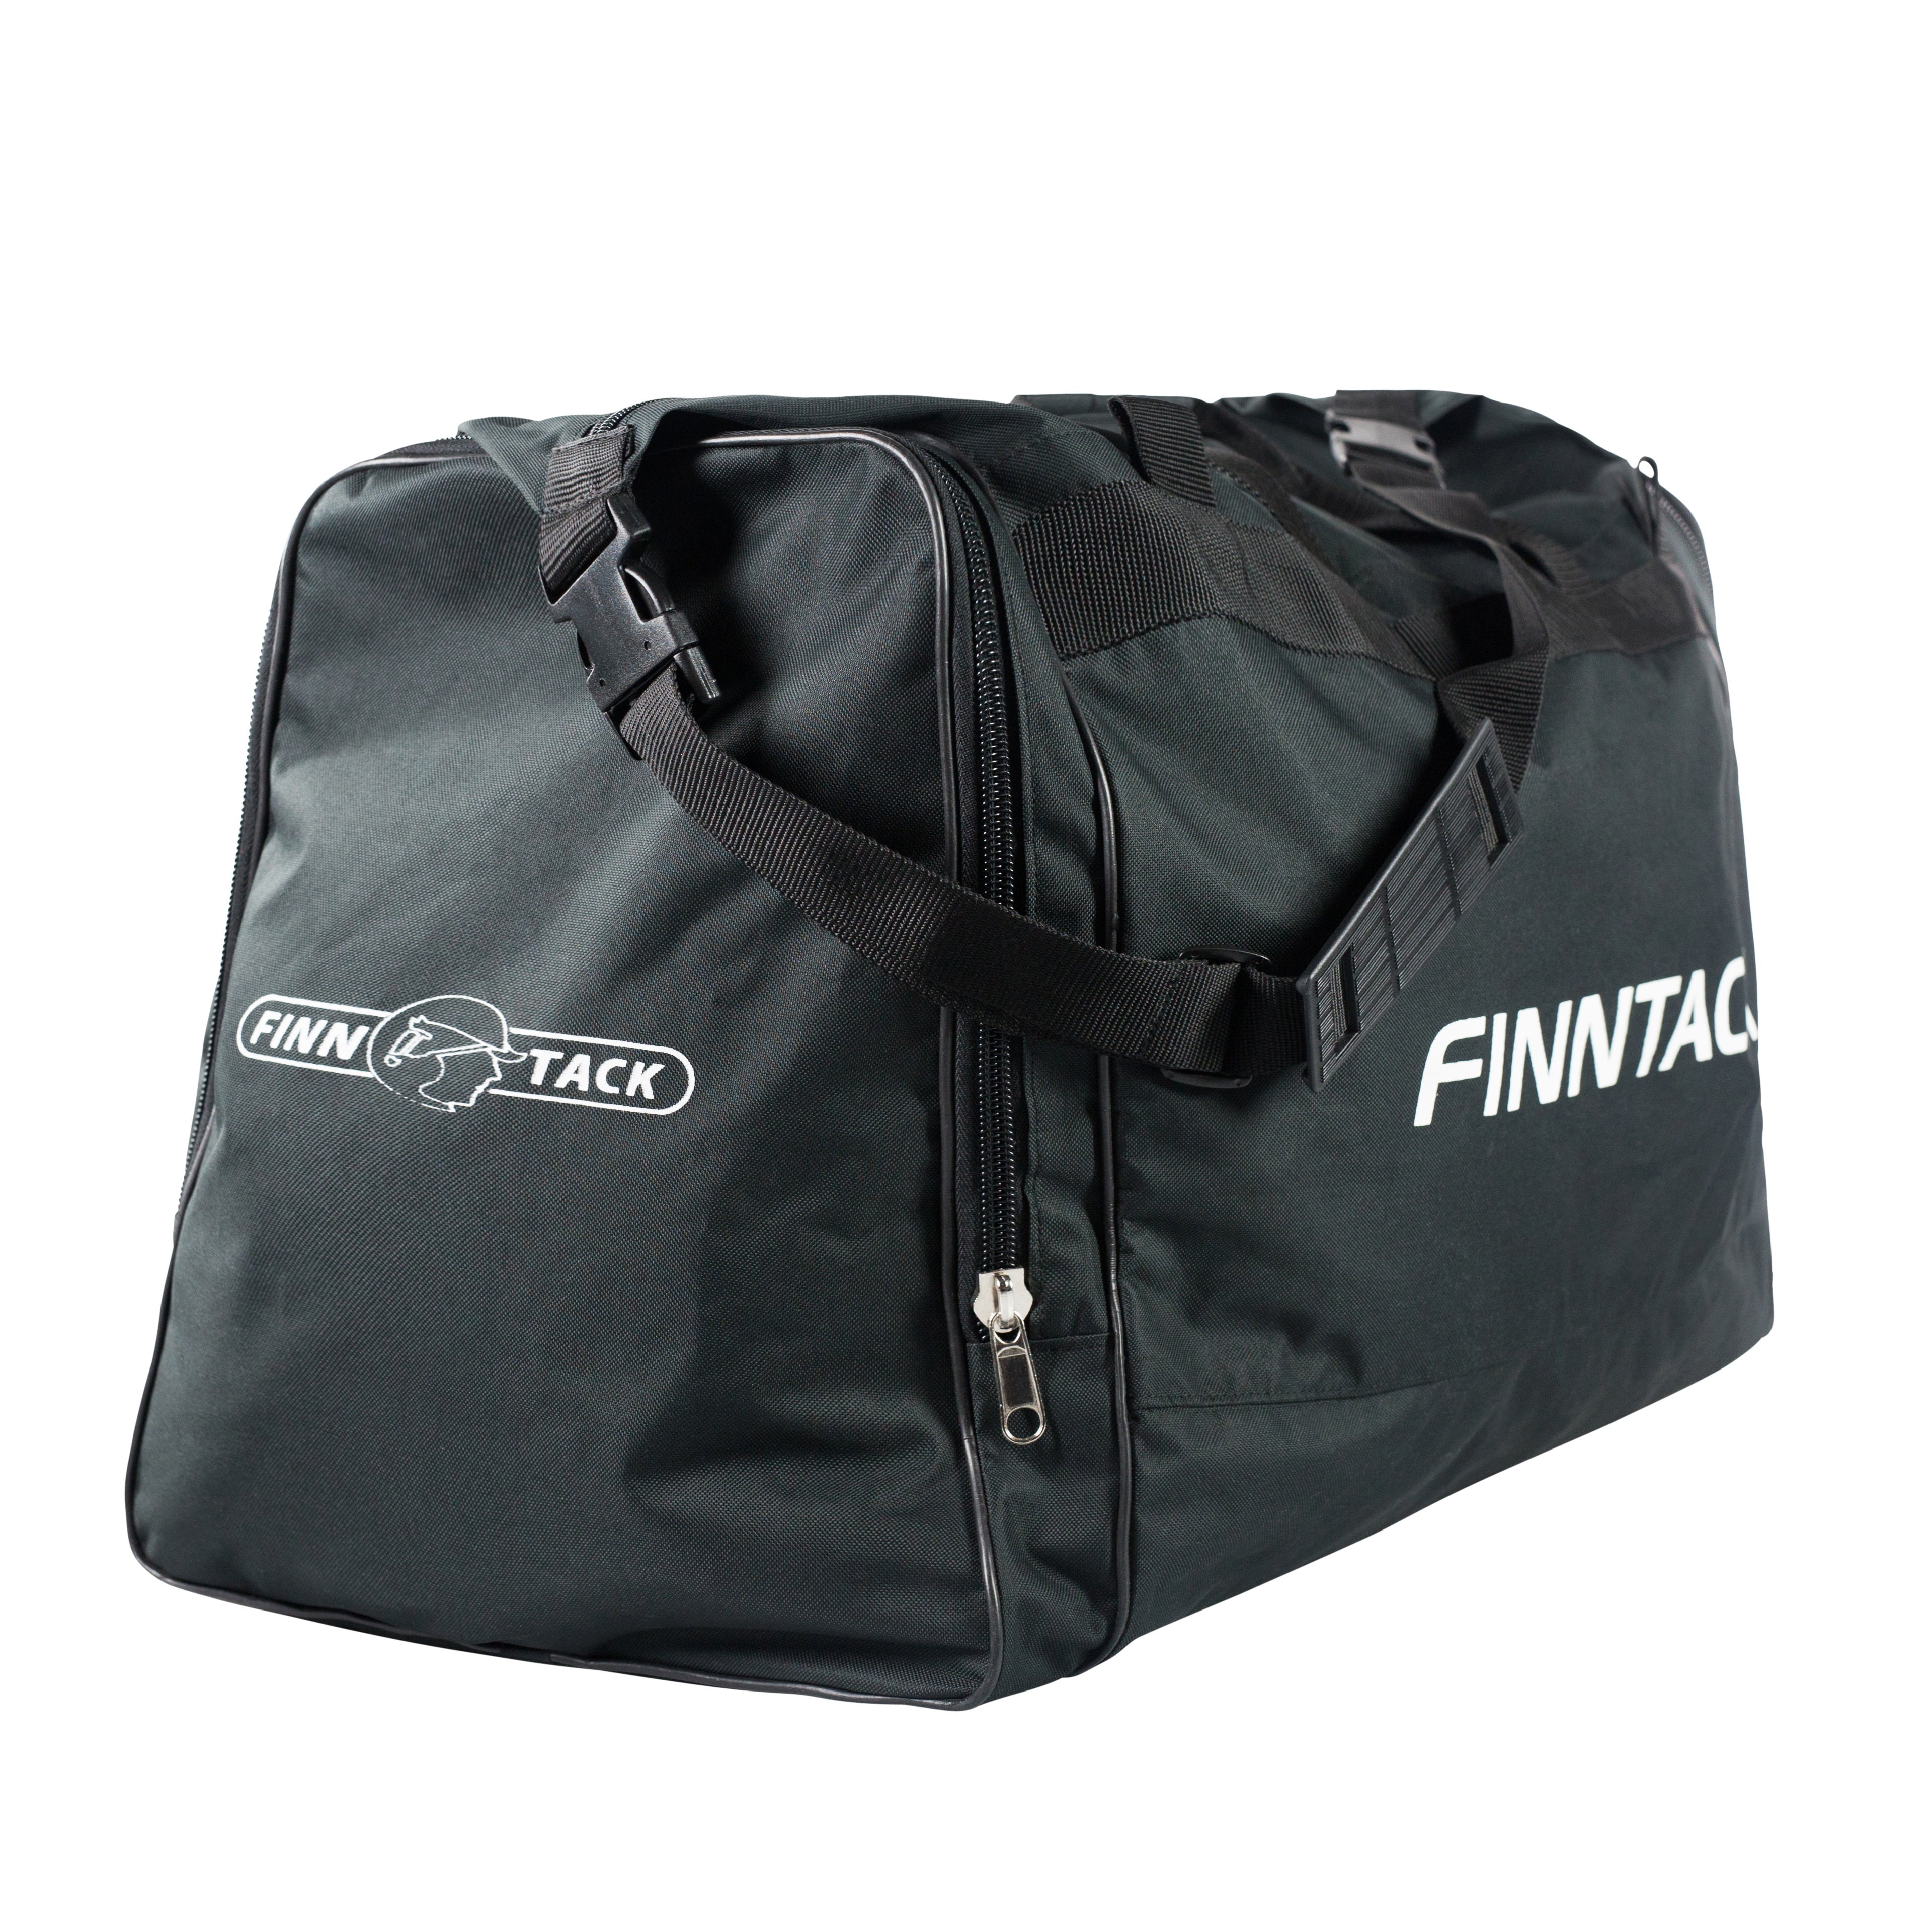 Finntack Pro jockeybag